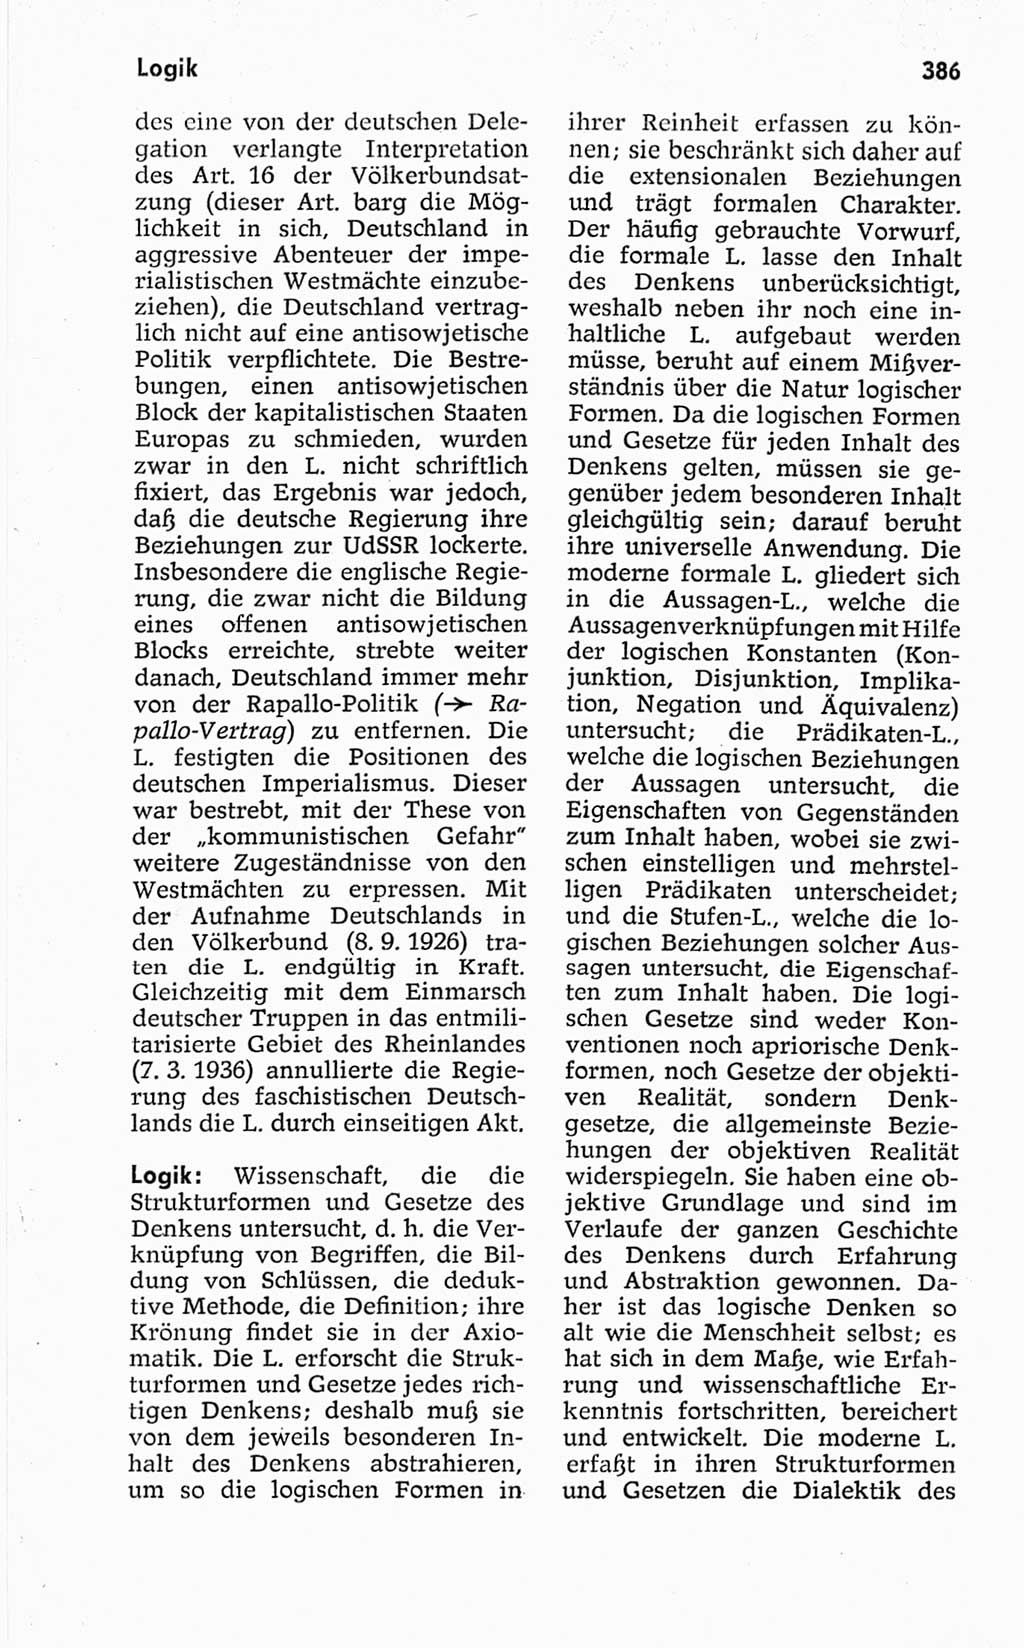 Kleines politisches Wörterbuch [Deutsche Demokratische Republik (DDR)] 1967, Seite 386 (Kl. pol. Wb. DDR 1967, S. 386)